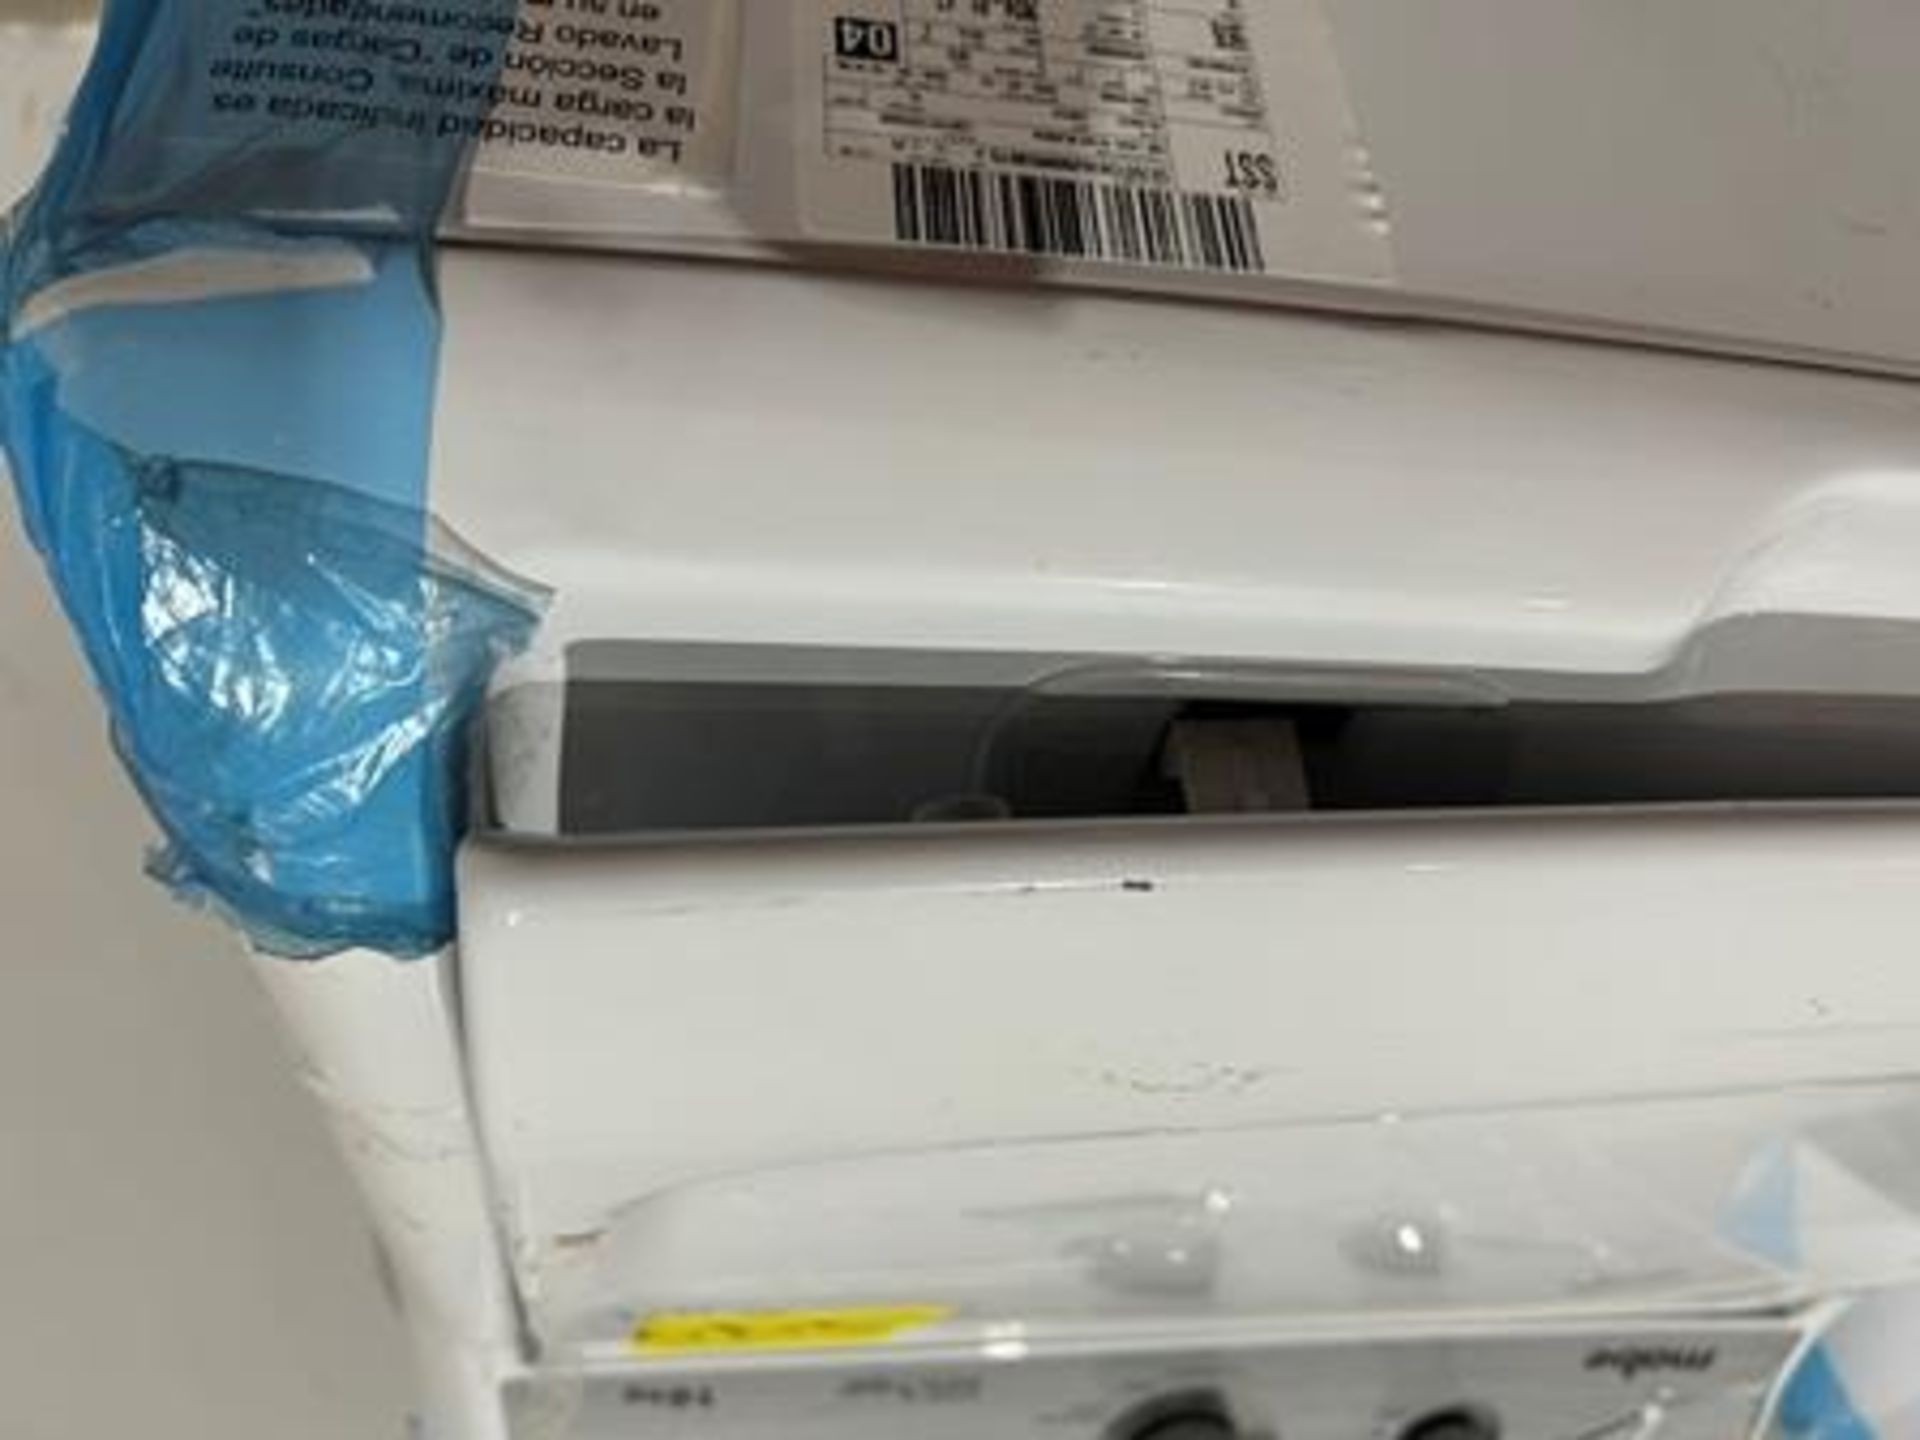 Lote de 2 lavadoras contiene: 1 Lavadora de 16 KG Marca MABE, Modelo LMA76112CBAB02, Serie S91208, - Image 6 of 11